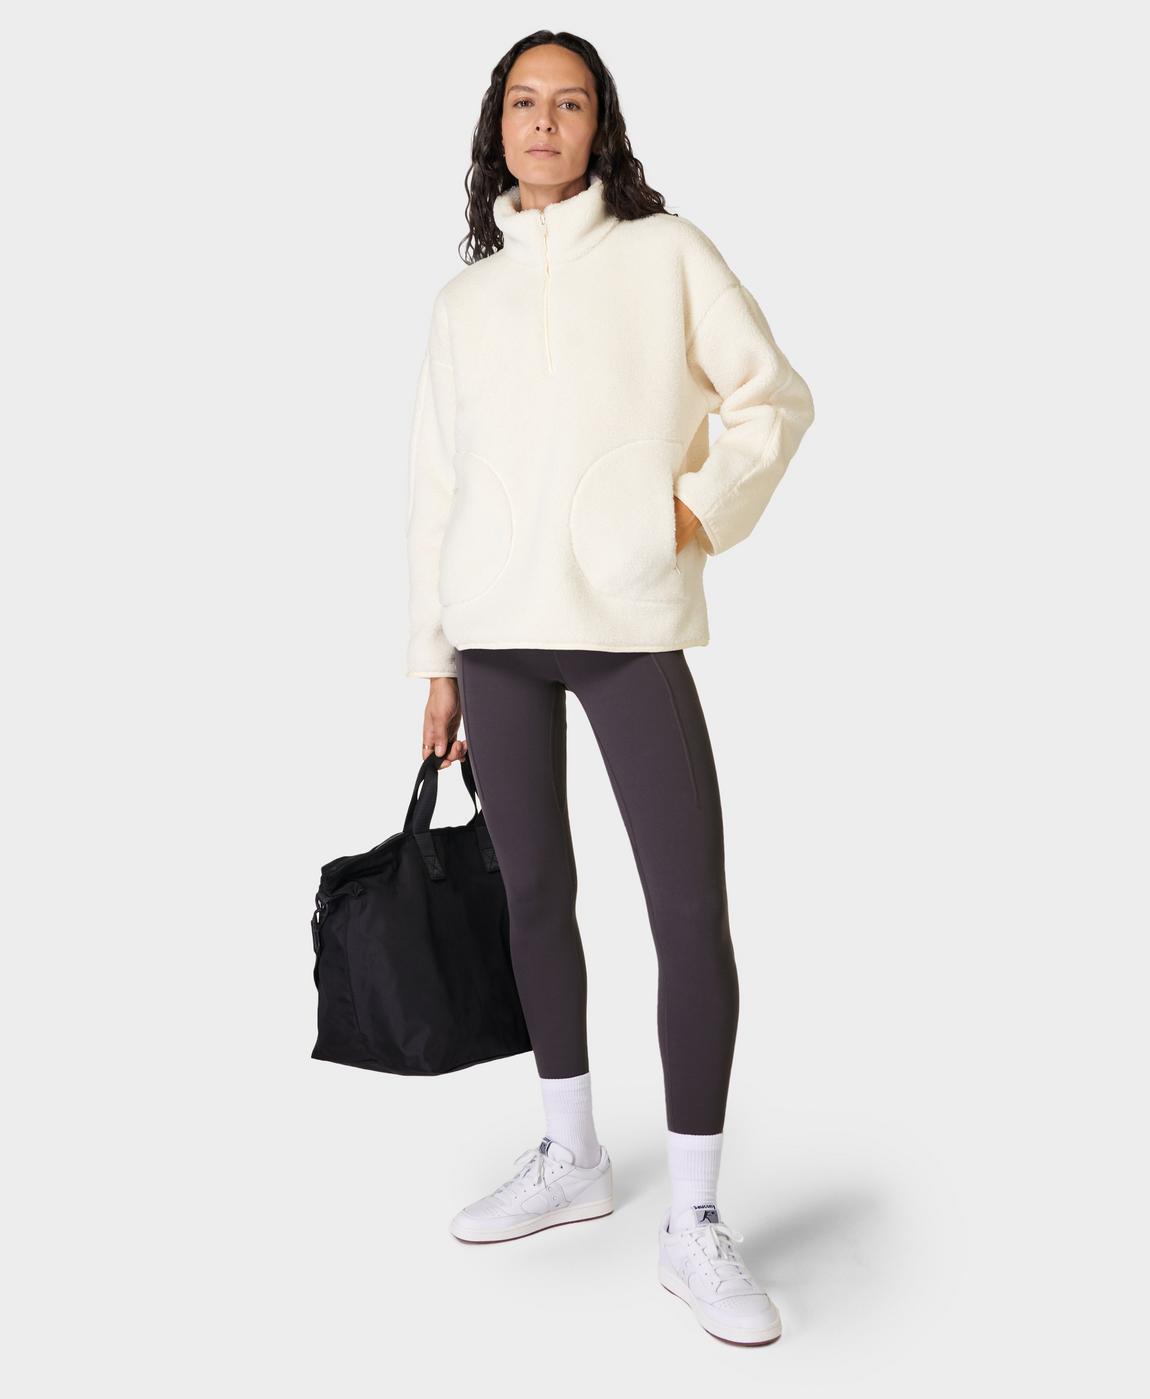 Plush Fleece Textured Half Zip - Studio White, Women's Sweaters + Hoodies